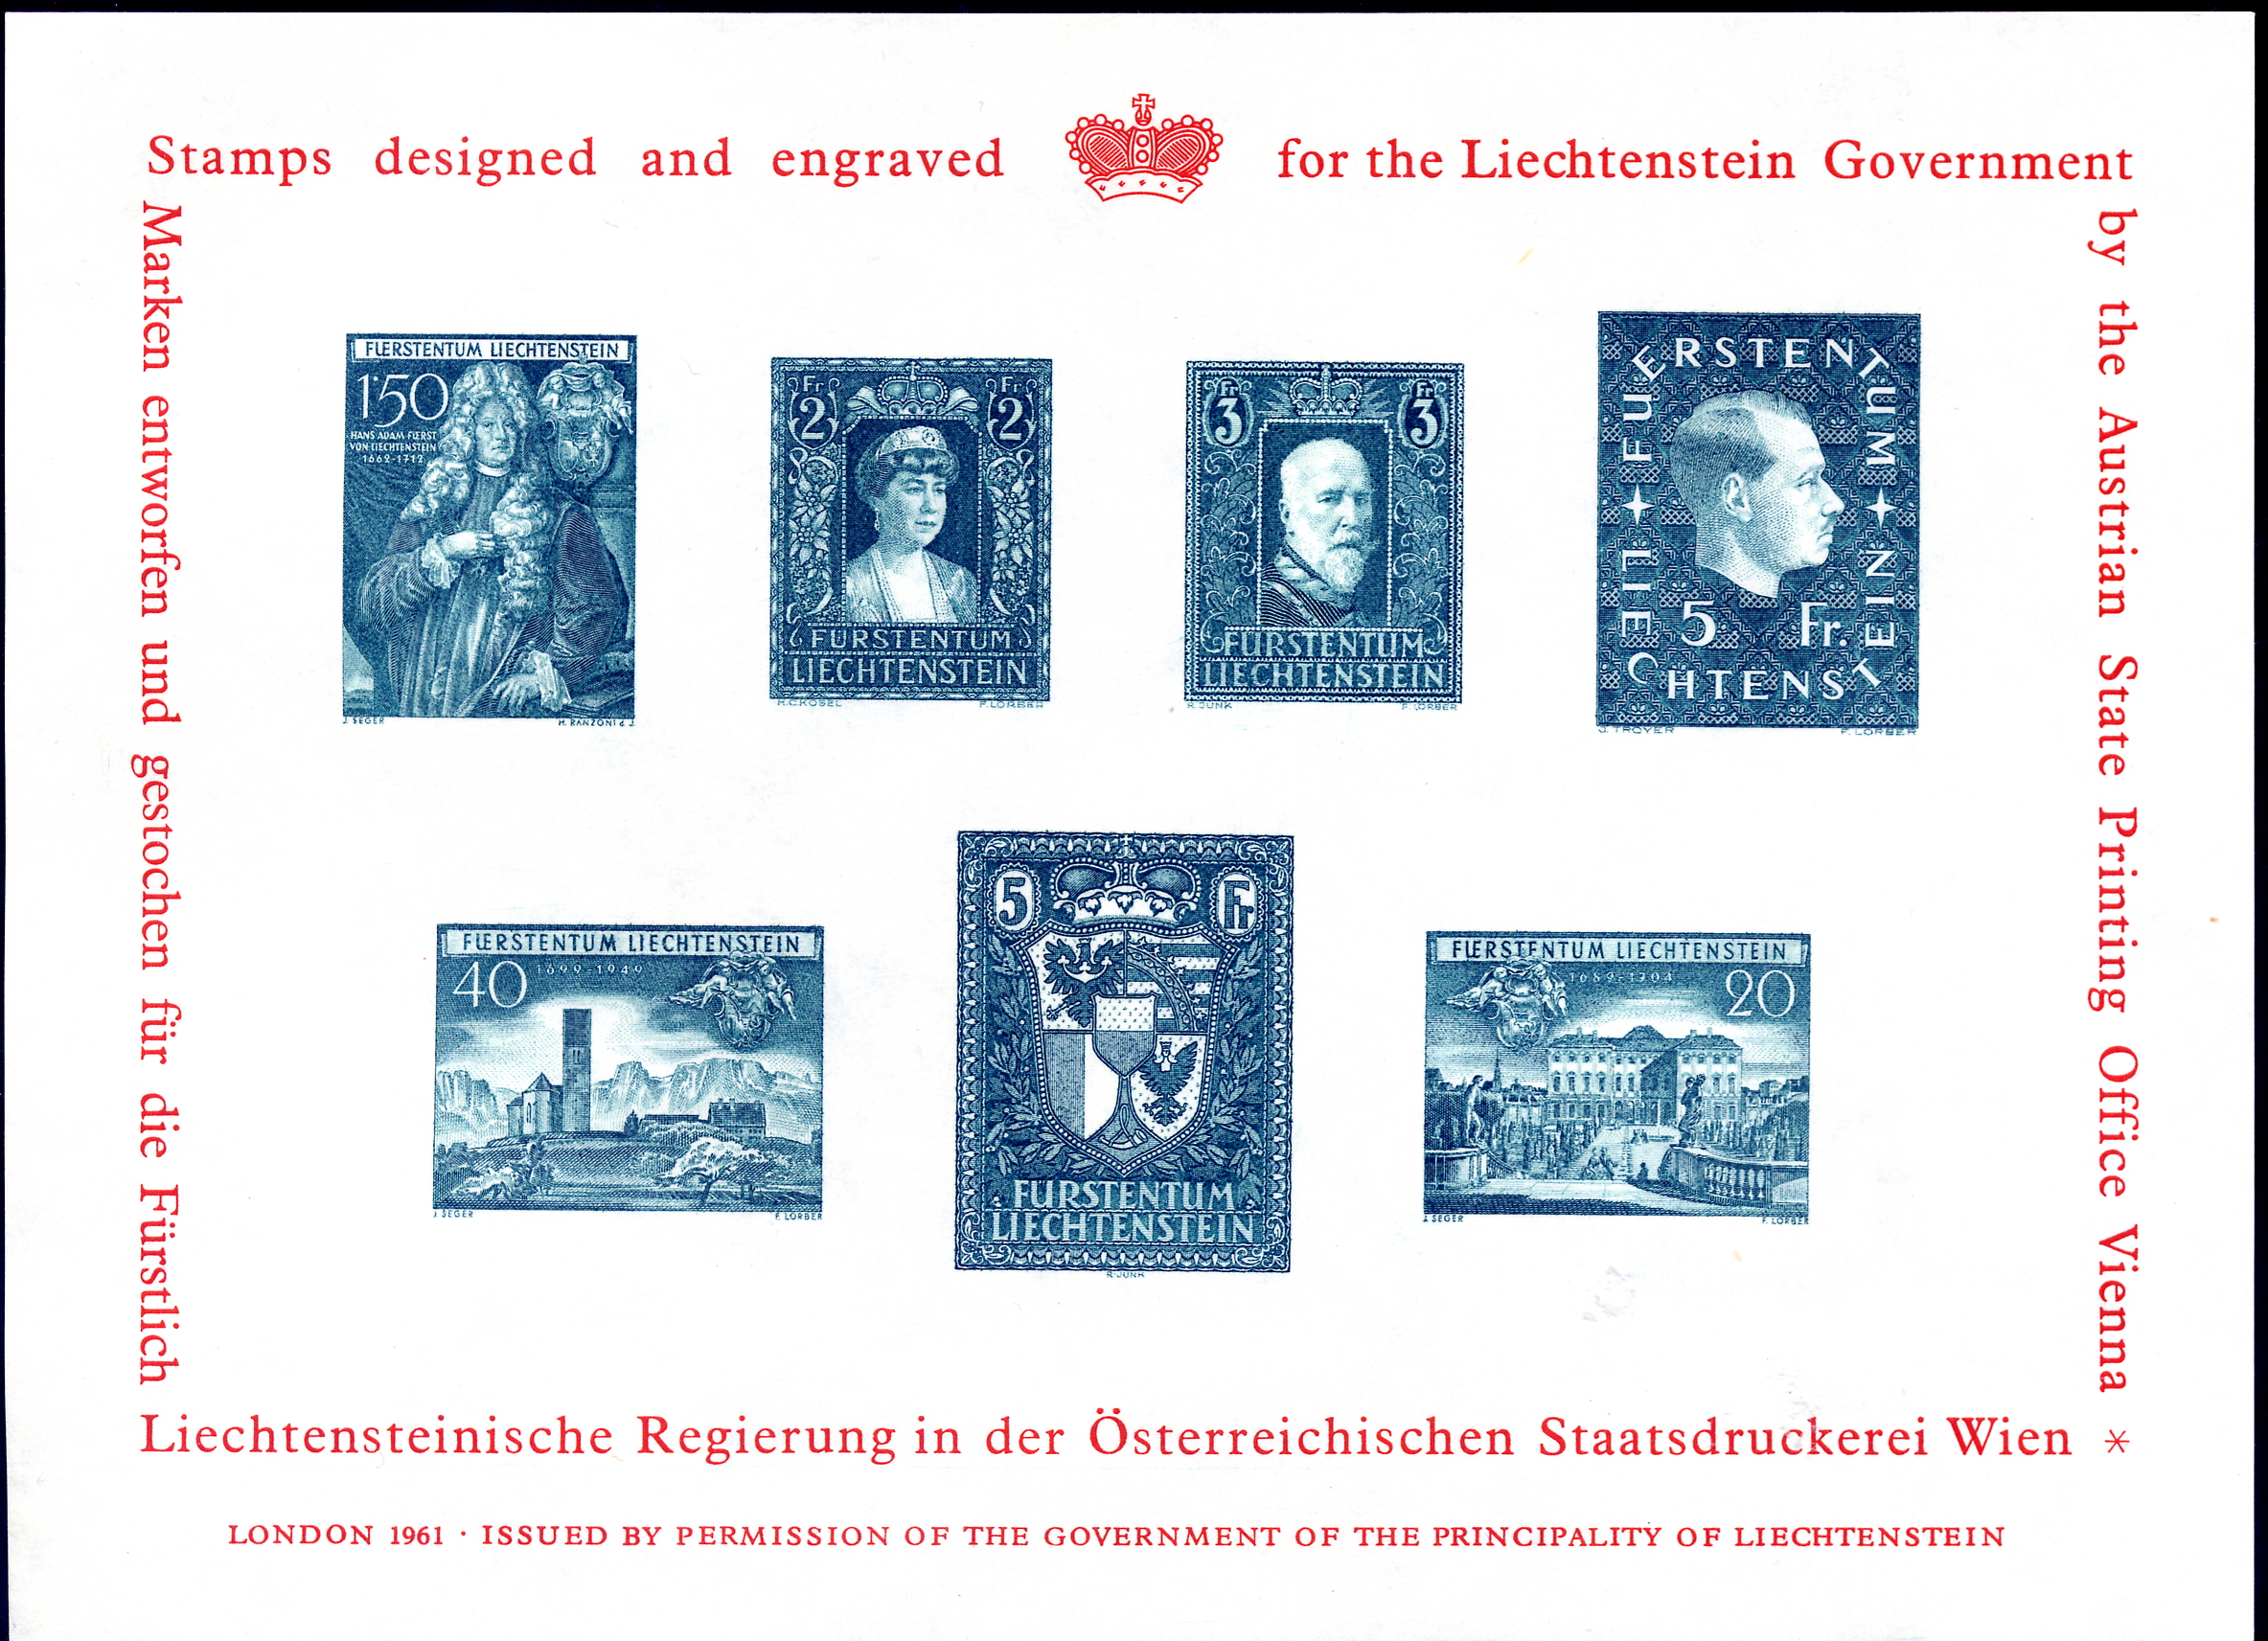 https://swiss-stamps.org/wp-content/uploads/2023/12/1961-London-Souvenir-Sheet-1.jpg